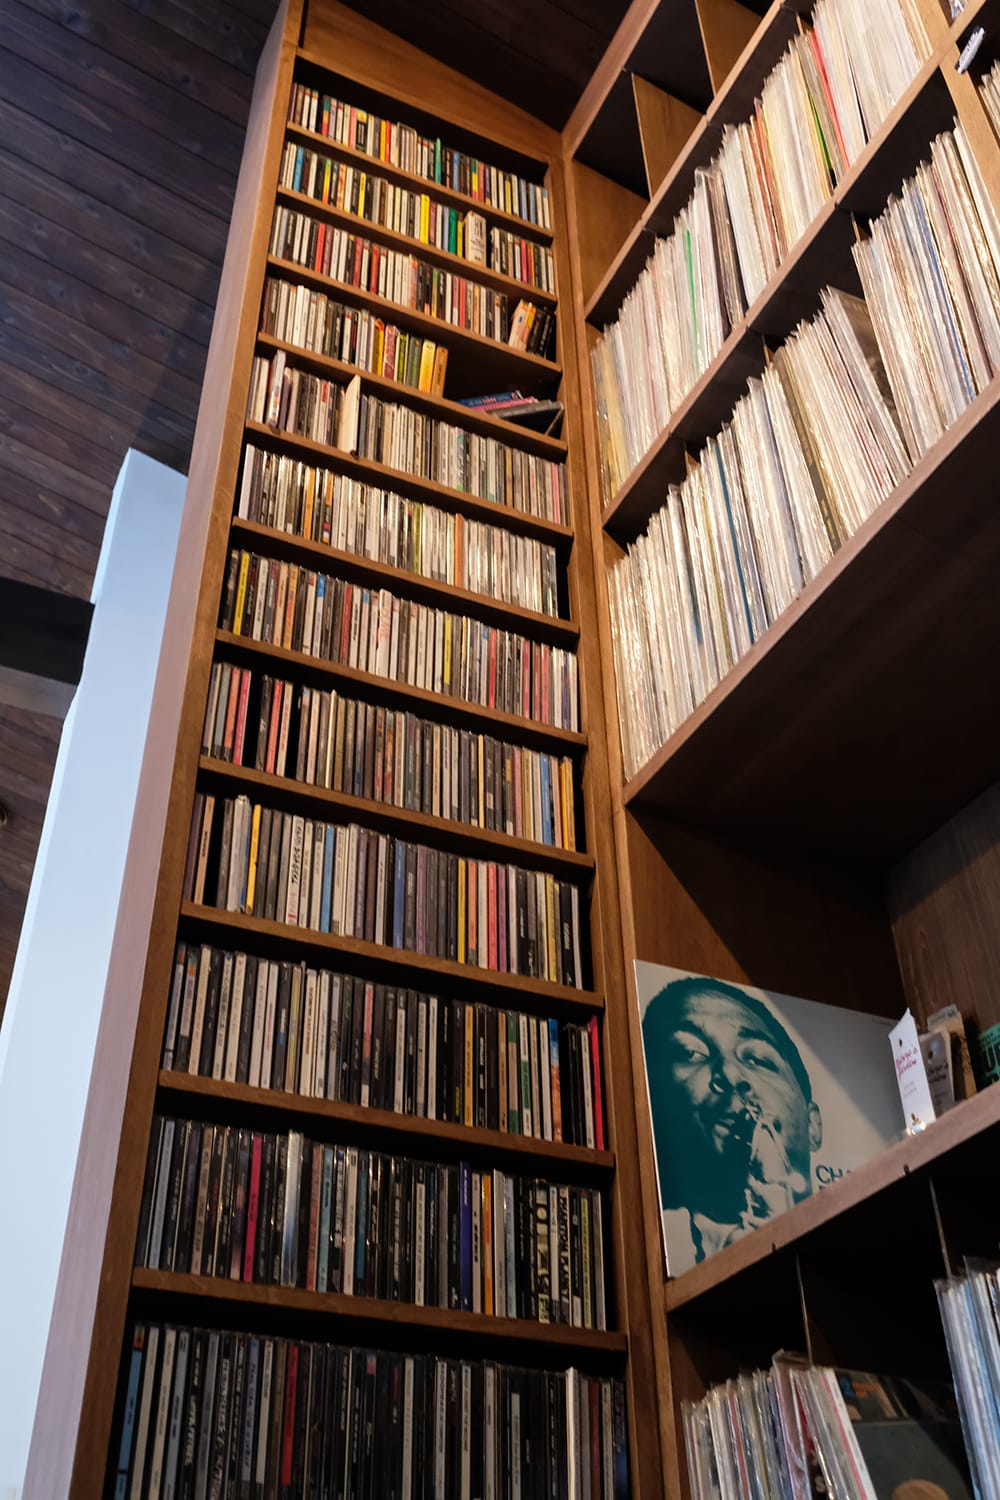 LP盤とCDの収納棚を見上げる